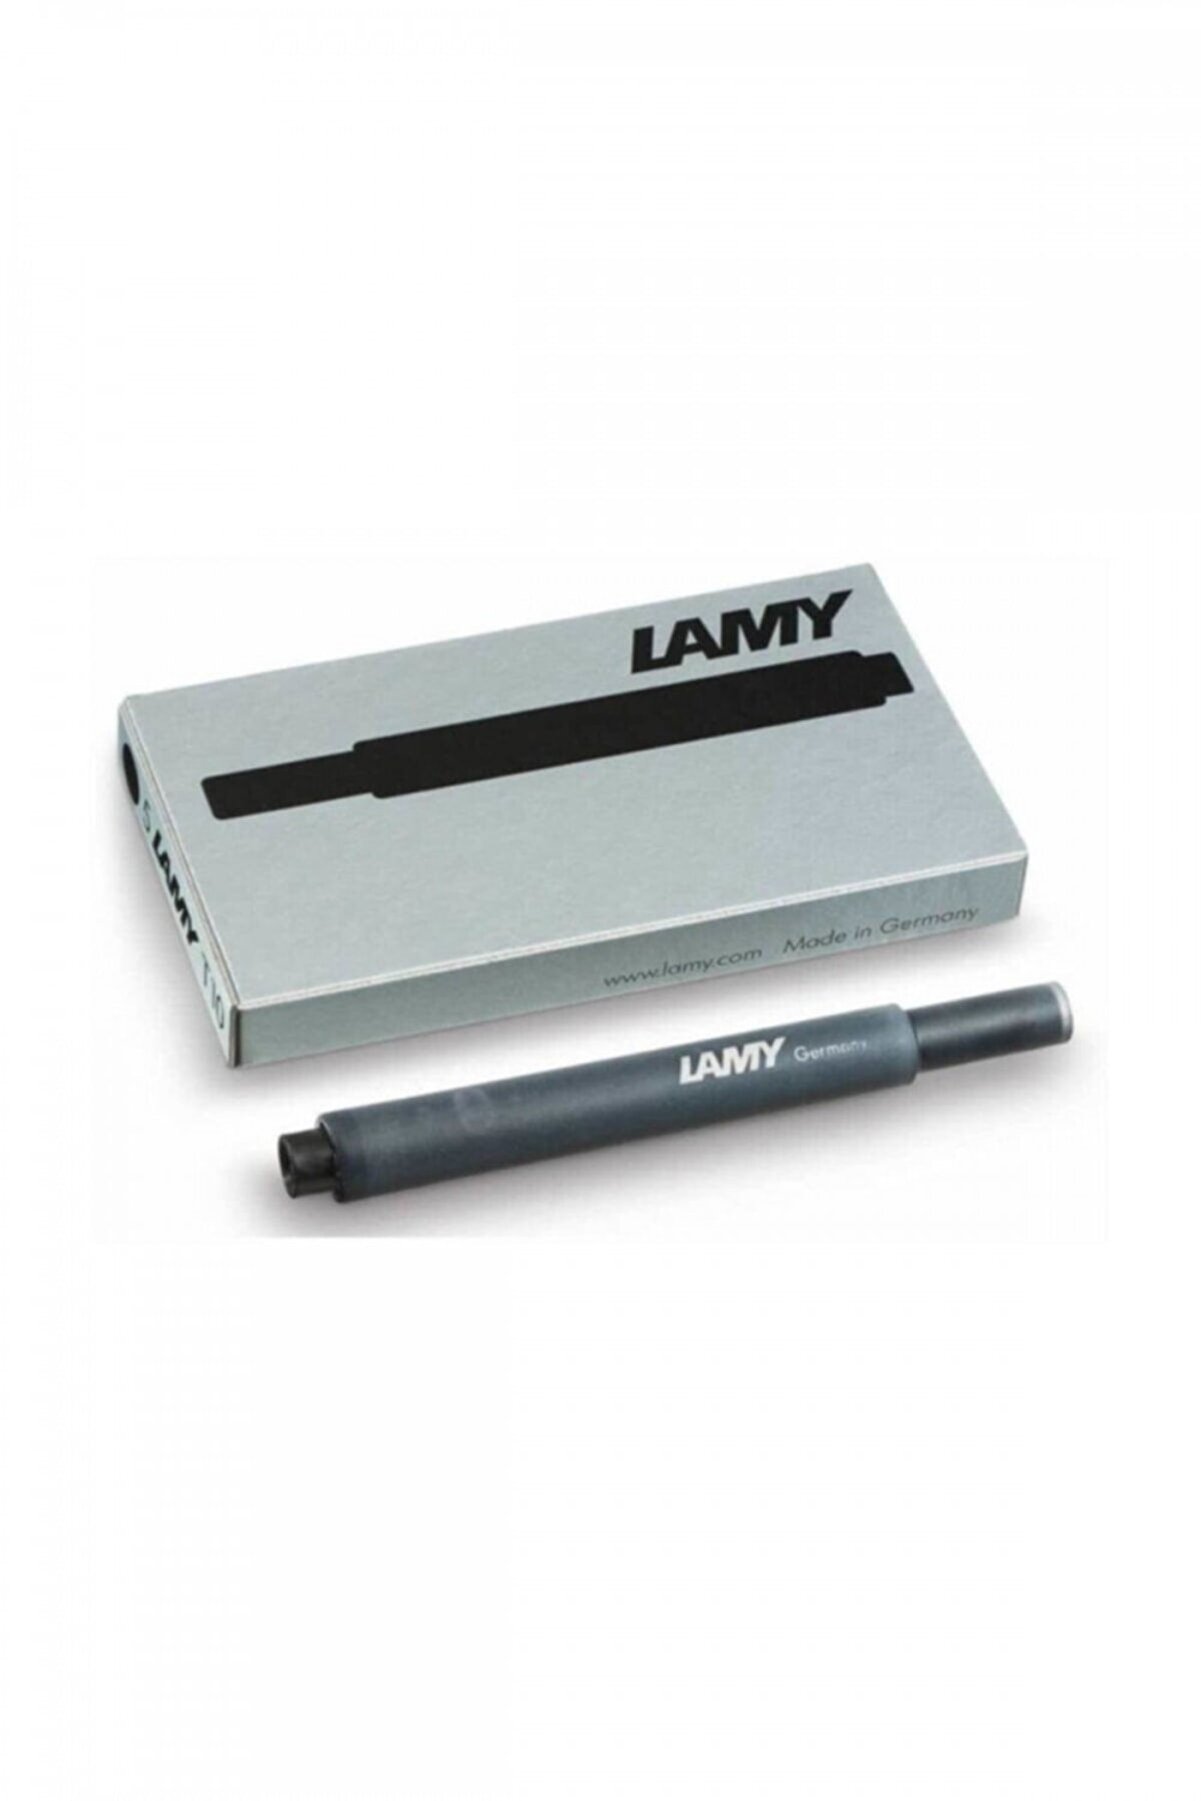 Lamy T10-s Siyah Dolma Kalem Kartuşu